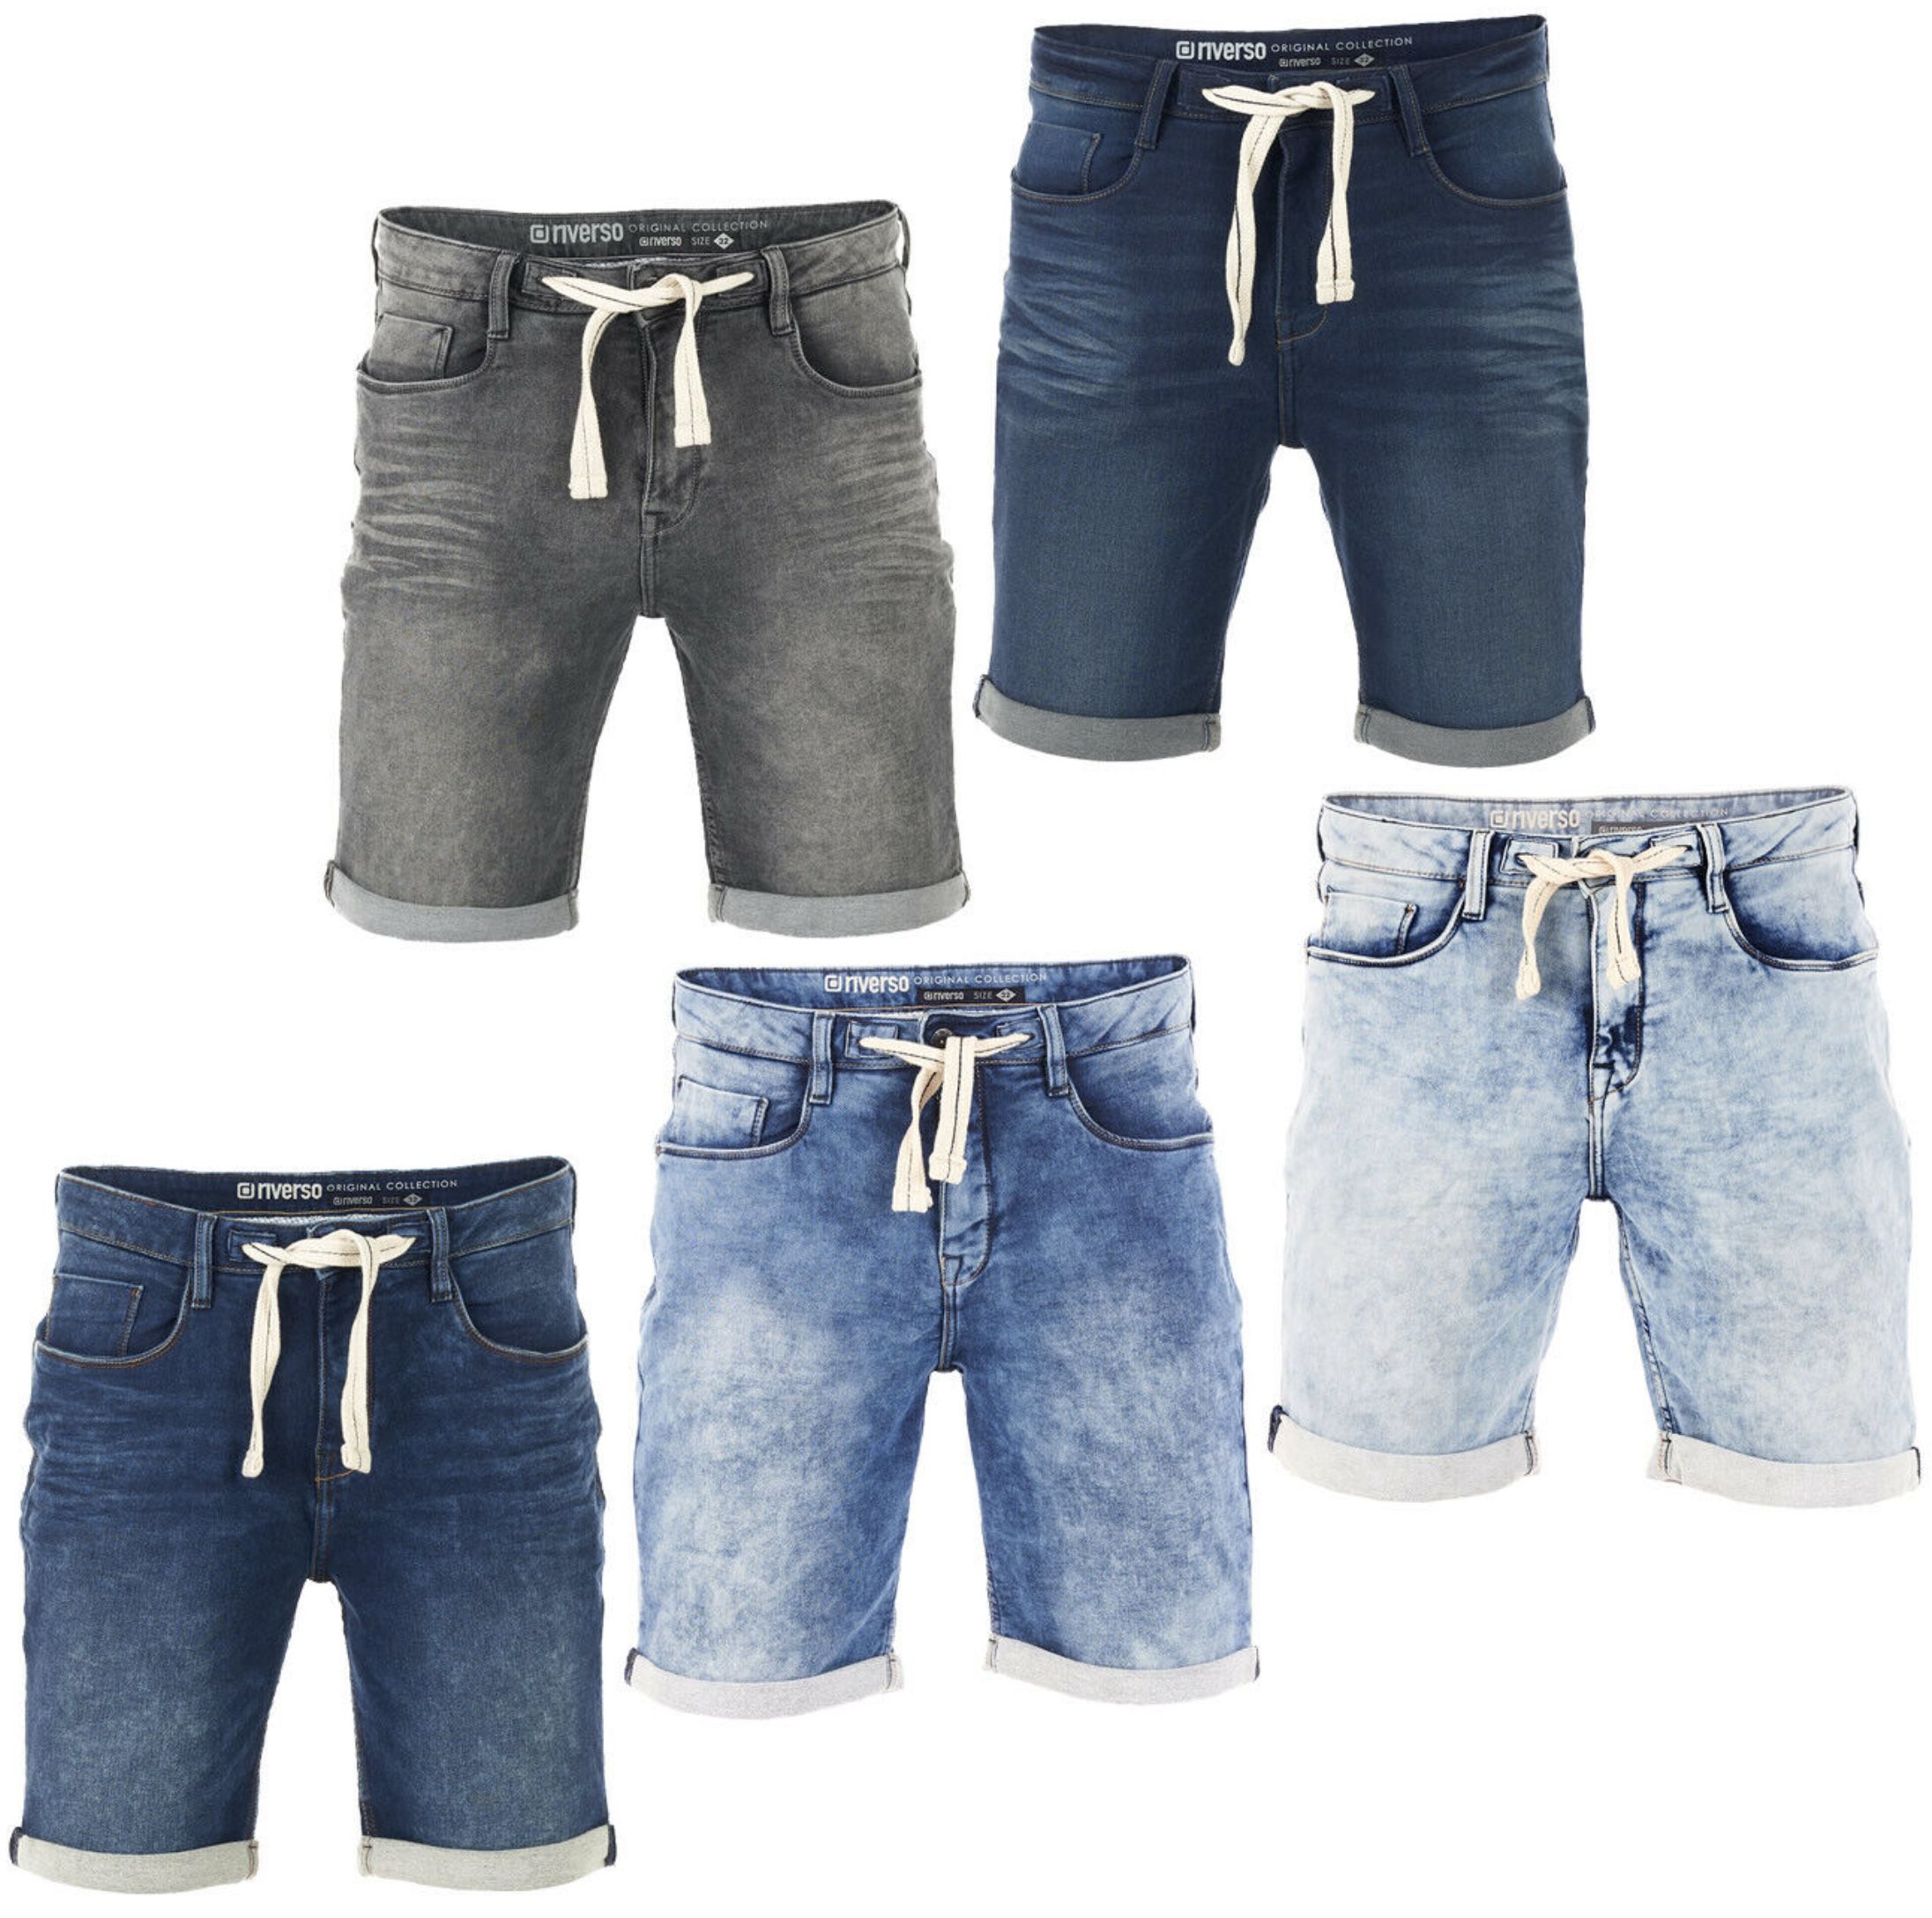 riverso Herren Jeans Shorts RIVPaul für je 27,95€ (statt 40€)